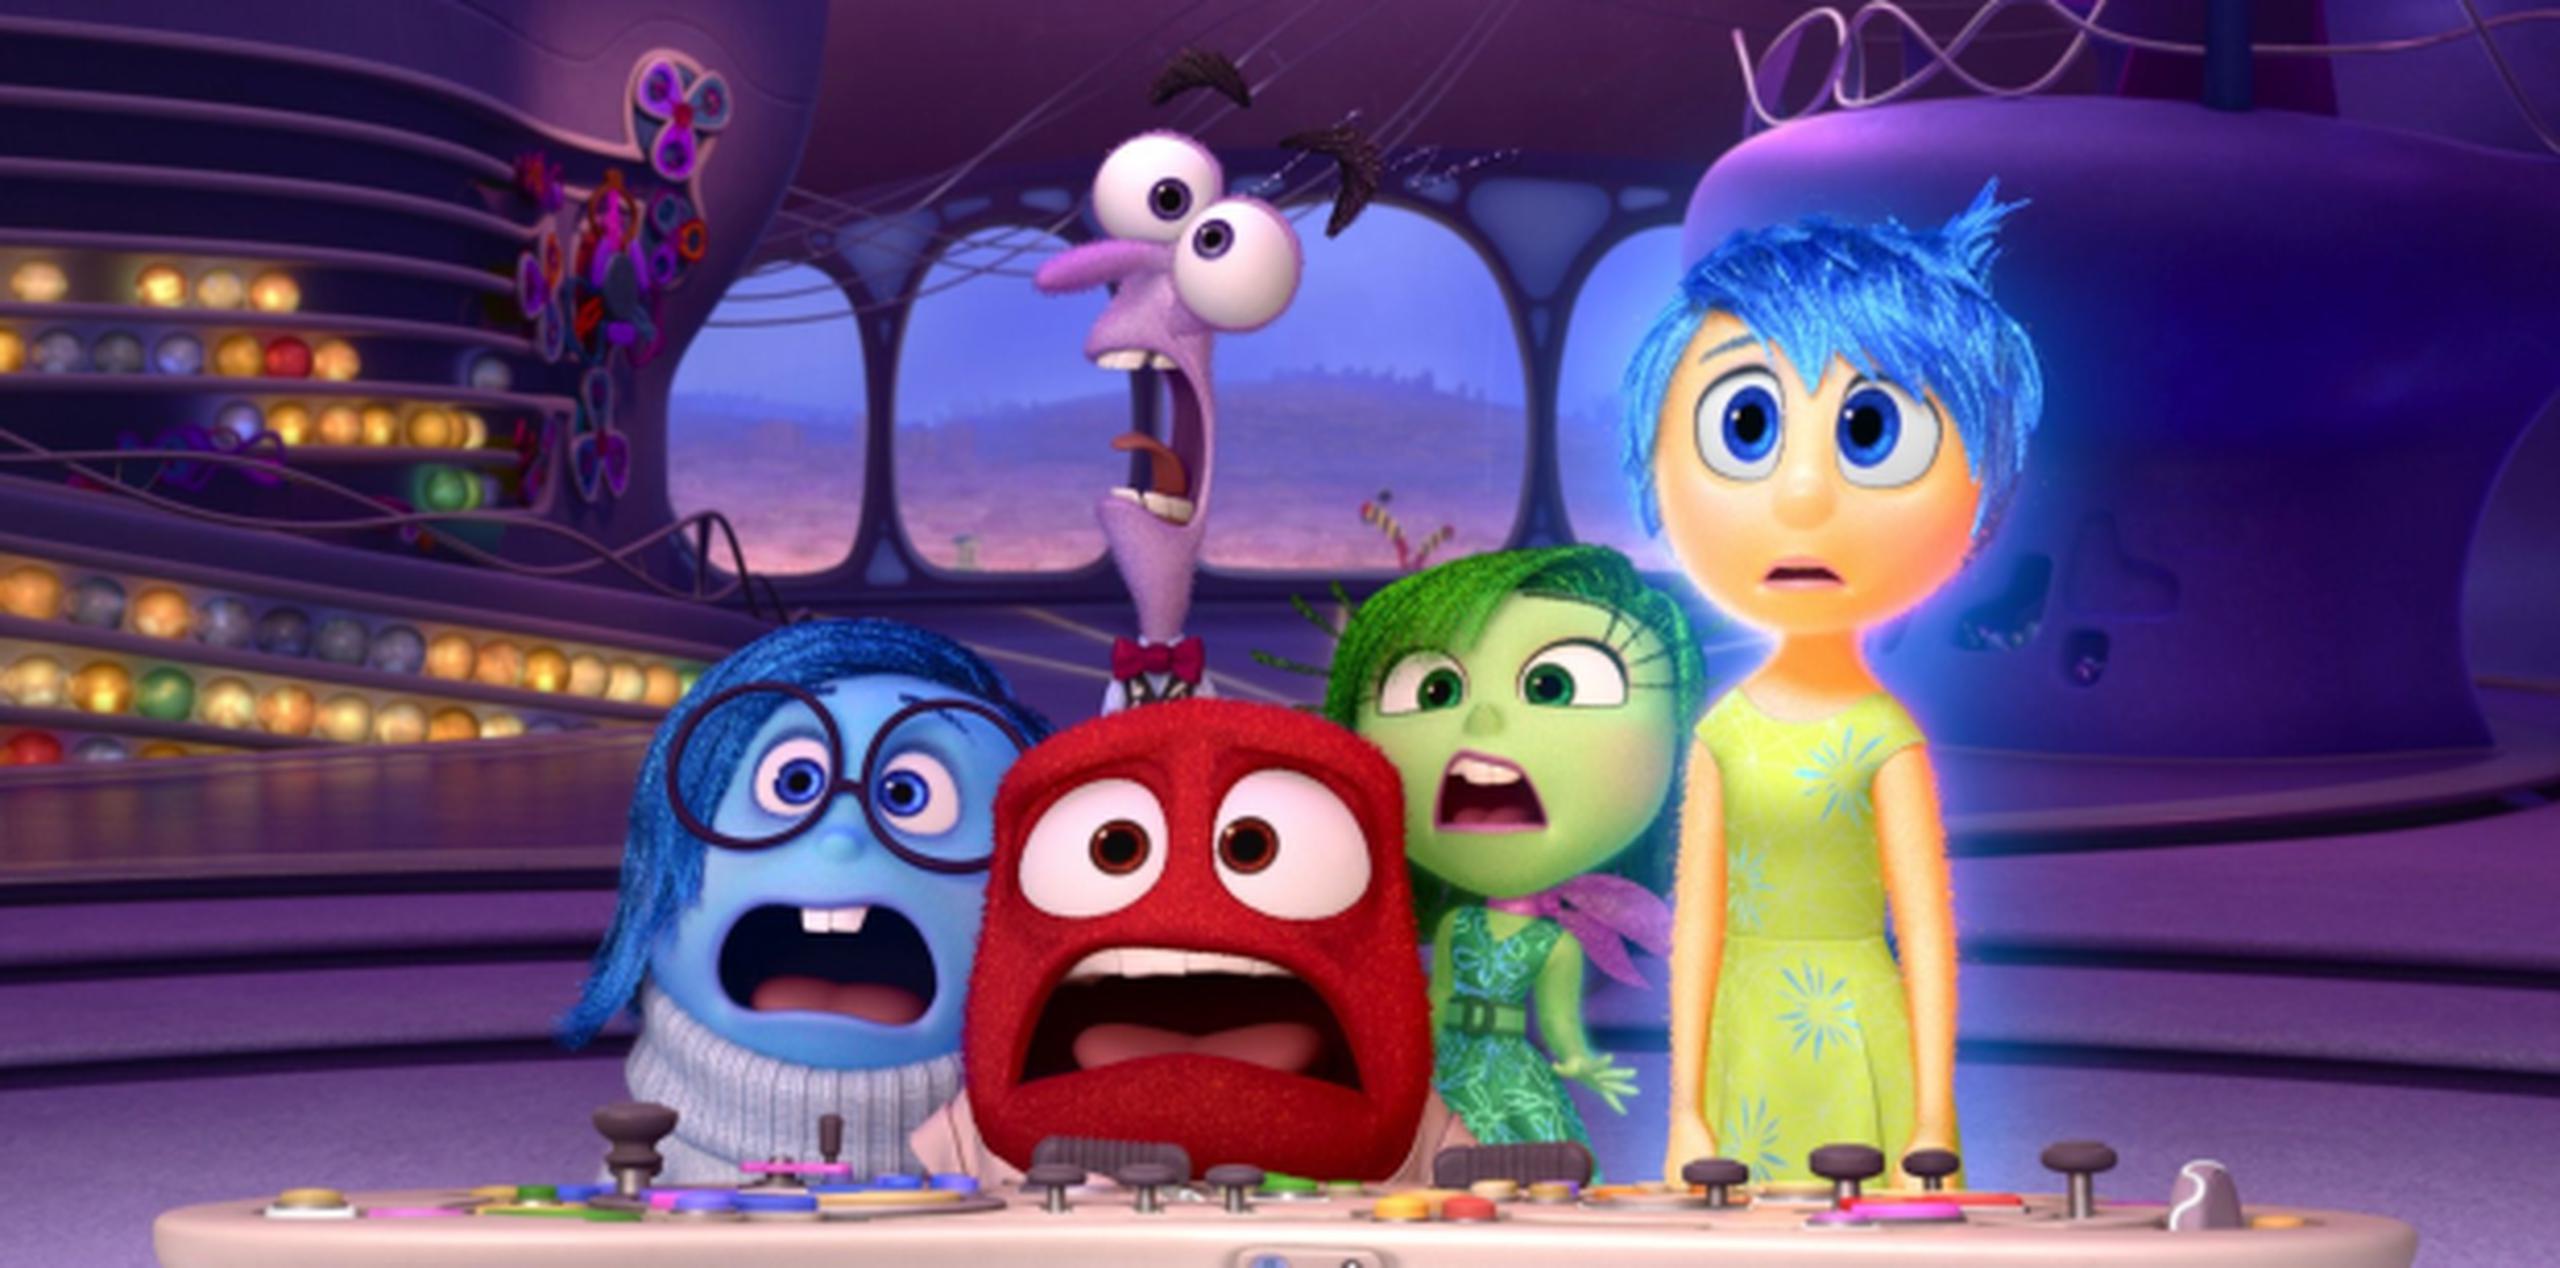 El filme recaudó más de $850 millones en el 2015. (Disney / Pixar)